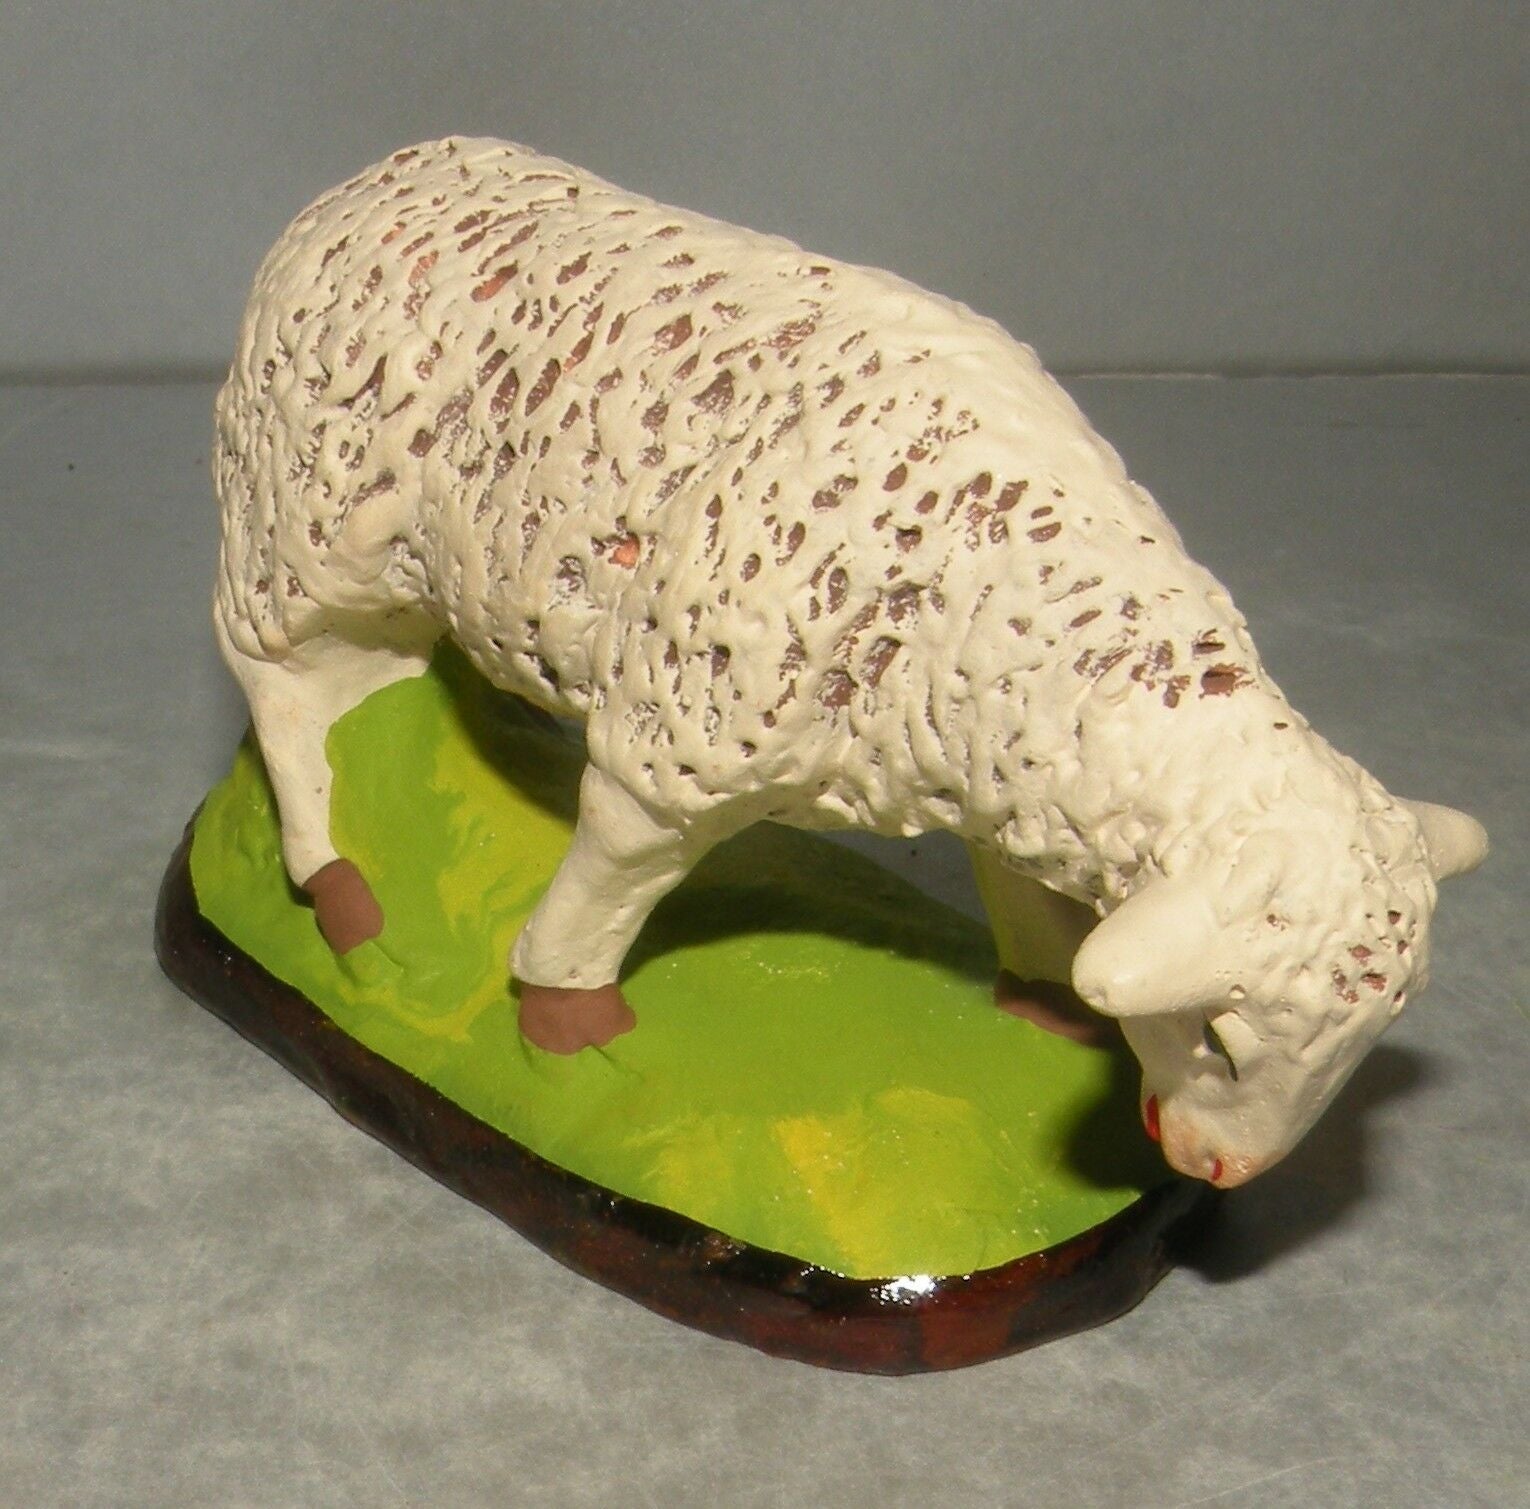 Sheep eating, Carbonel, N. 5